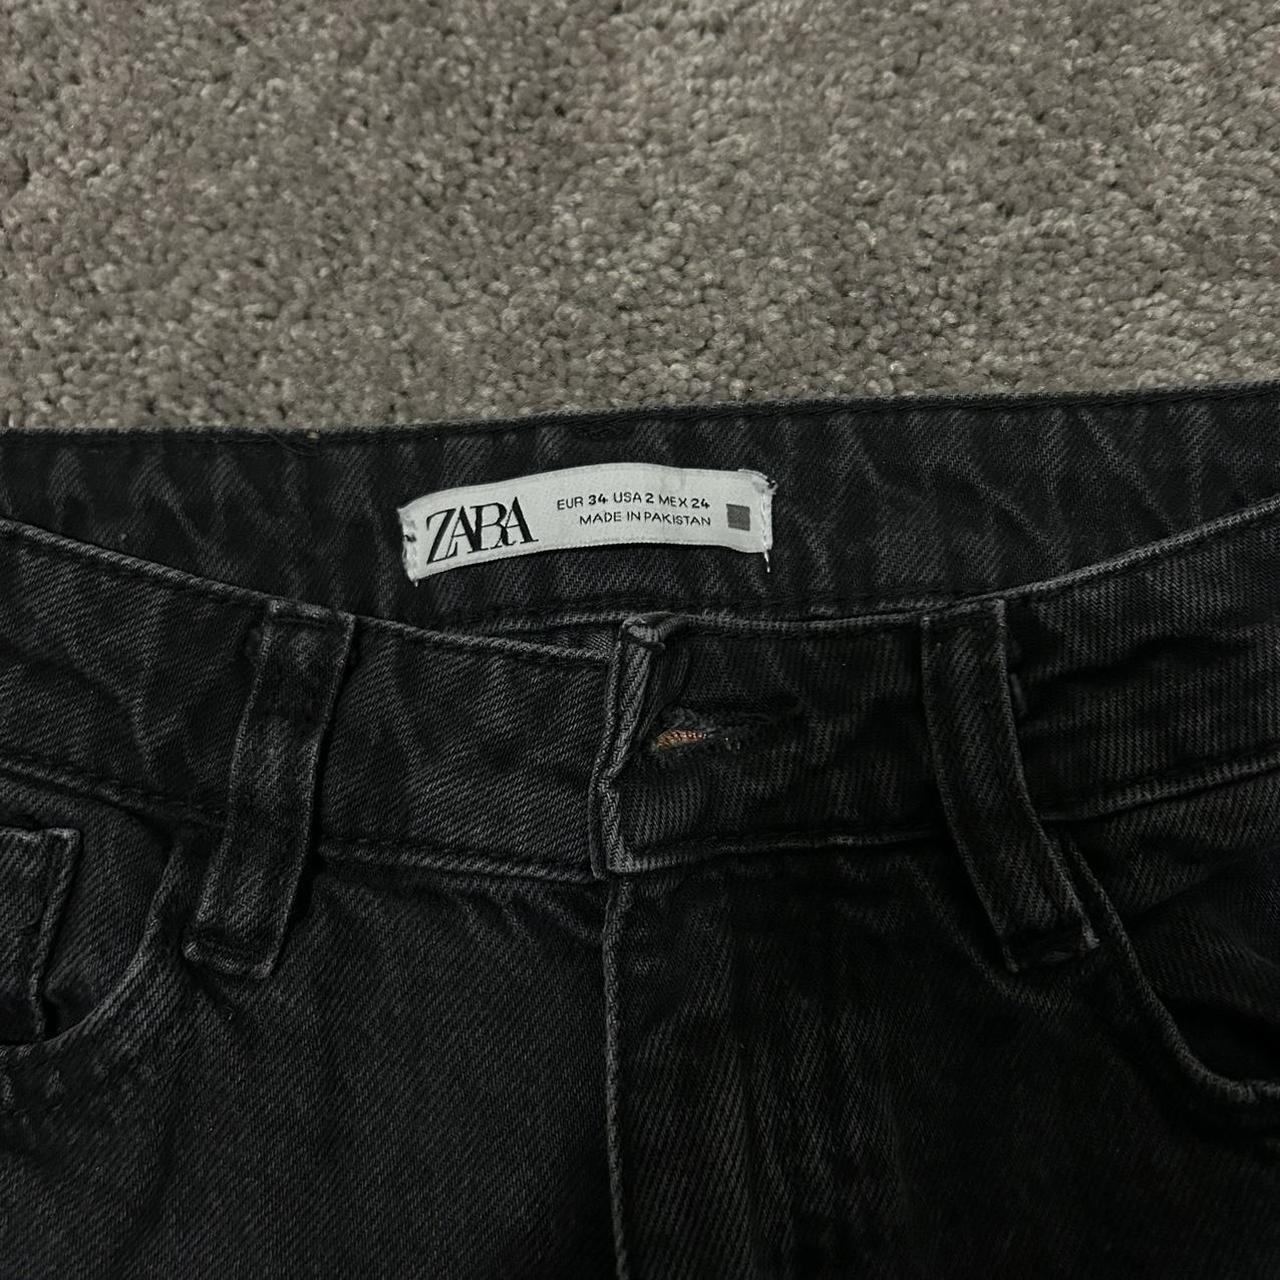 Zara dark wash mom jeans -fits 24 inch waist... - Depop